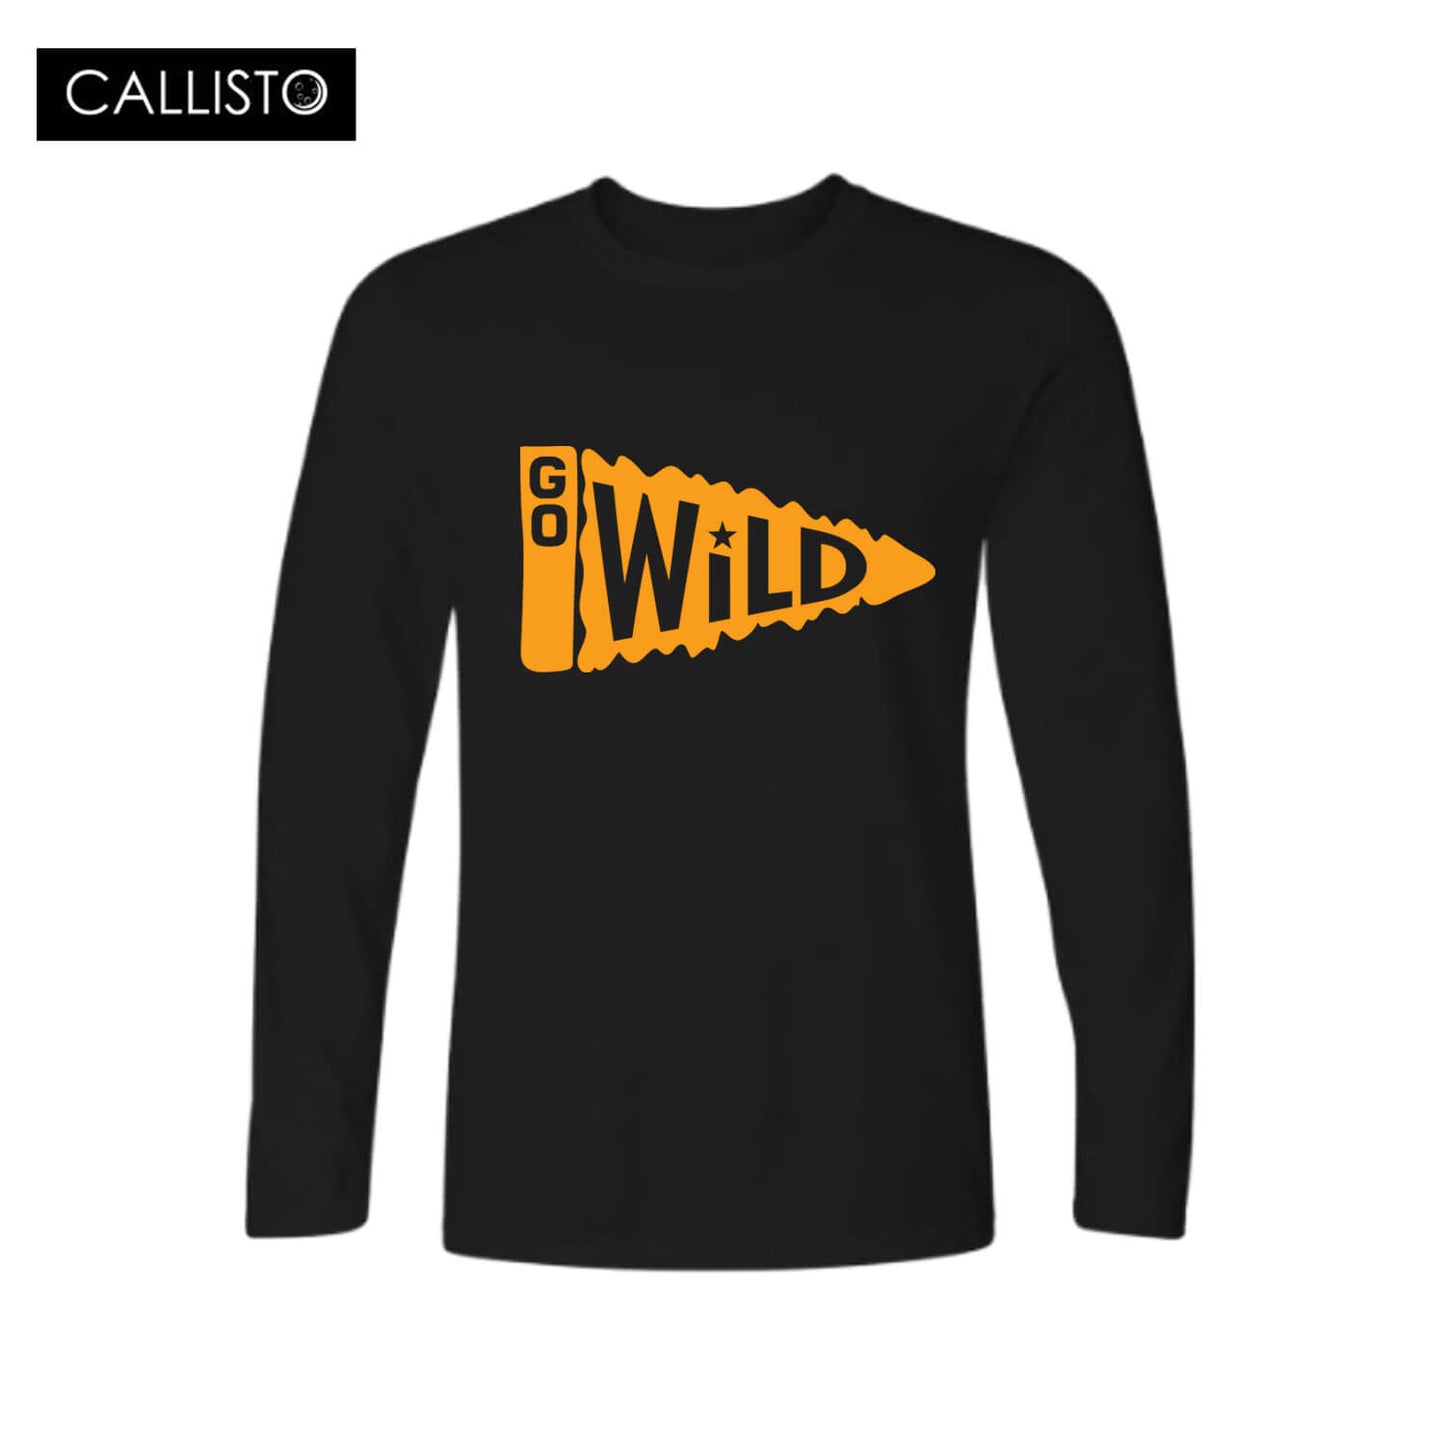 Go wild Long Sleeve T-shirt